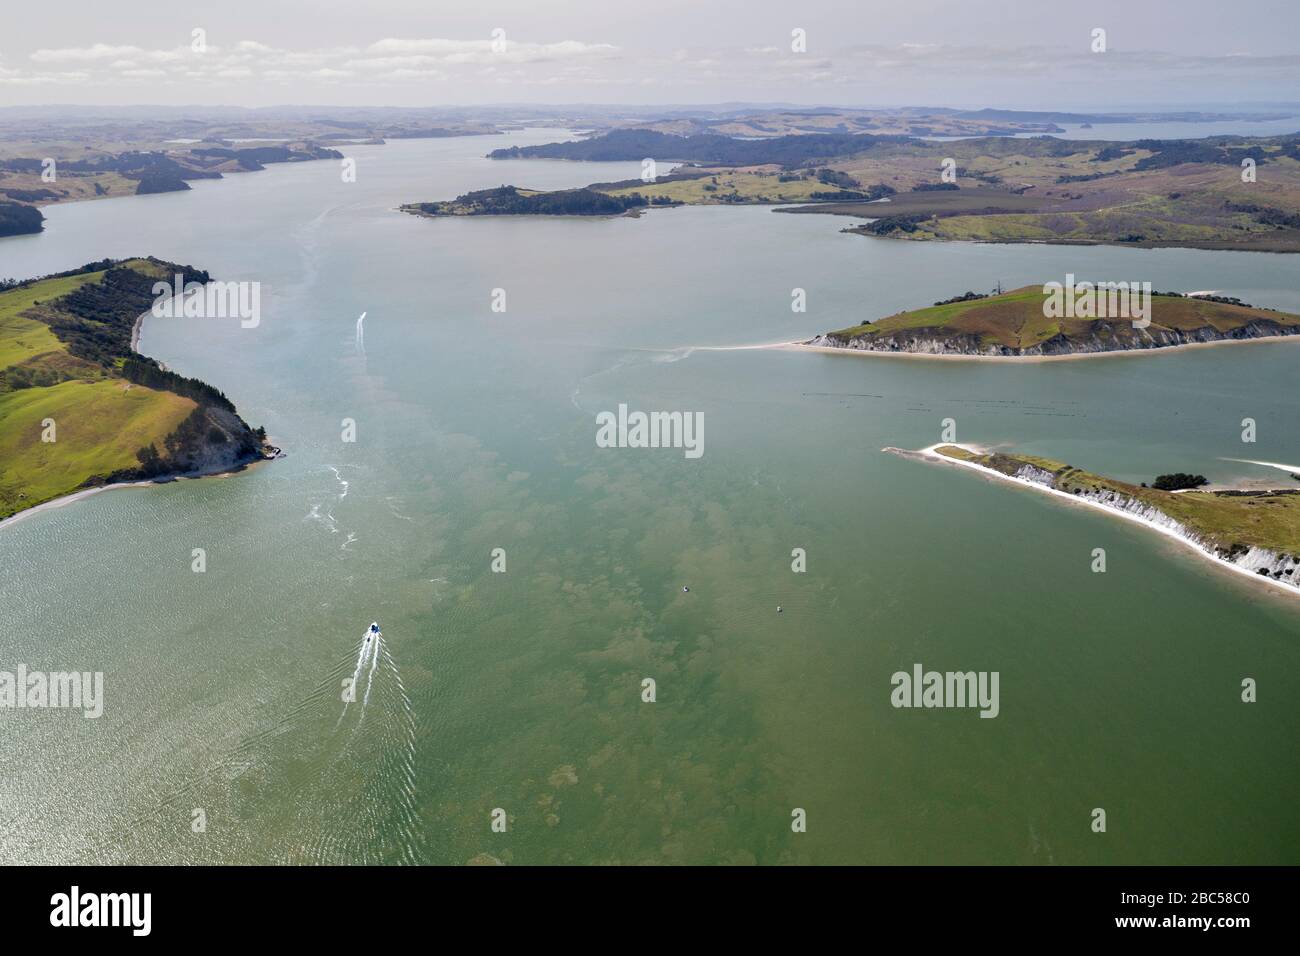 Vista aerea sul porto di Kaipara con un motoscafo sulle acque cristalline a Northland, Nuova Zelanda. Il paesaggio mostra alcune coste che si estendono fino alla fine di A. Foto Stock